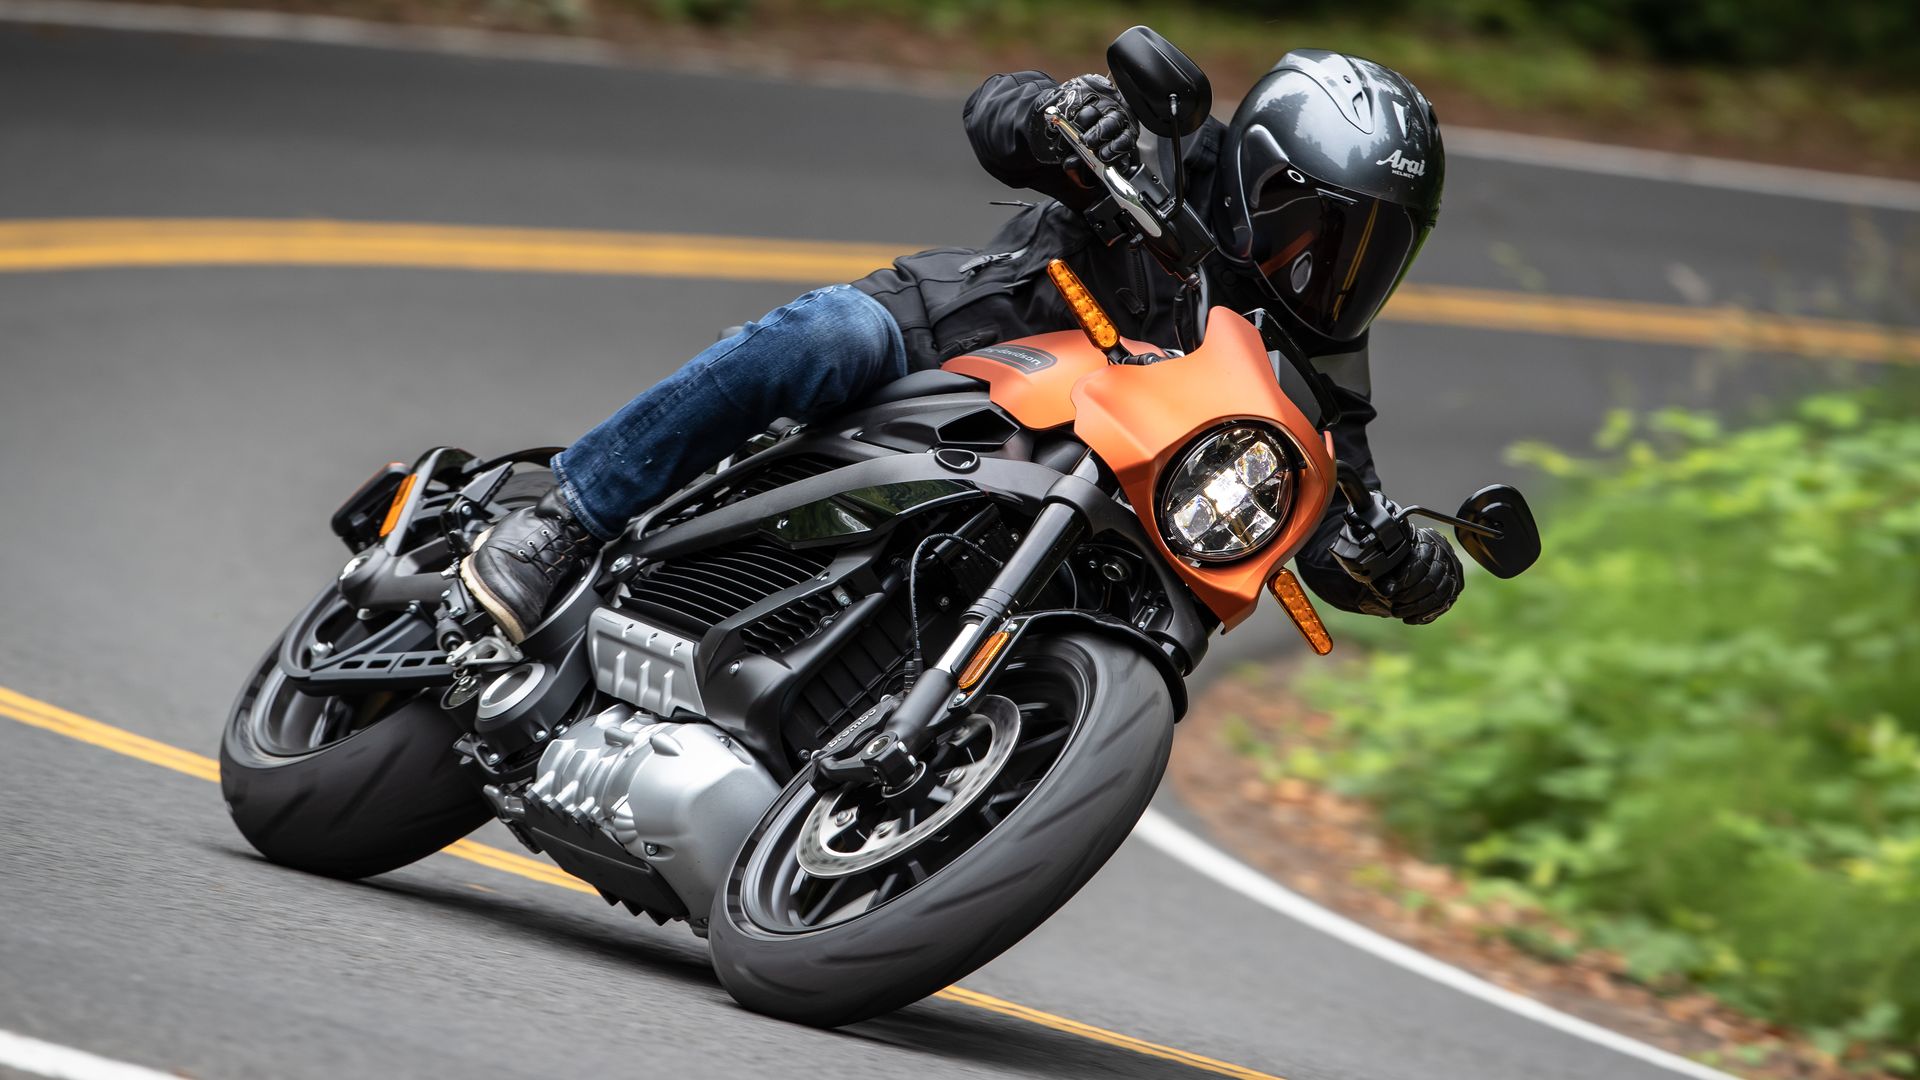 A helmet-wearing motorcyclist leans around a corner on an orange bike